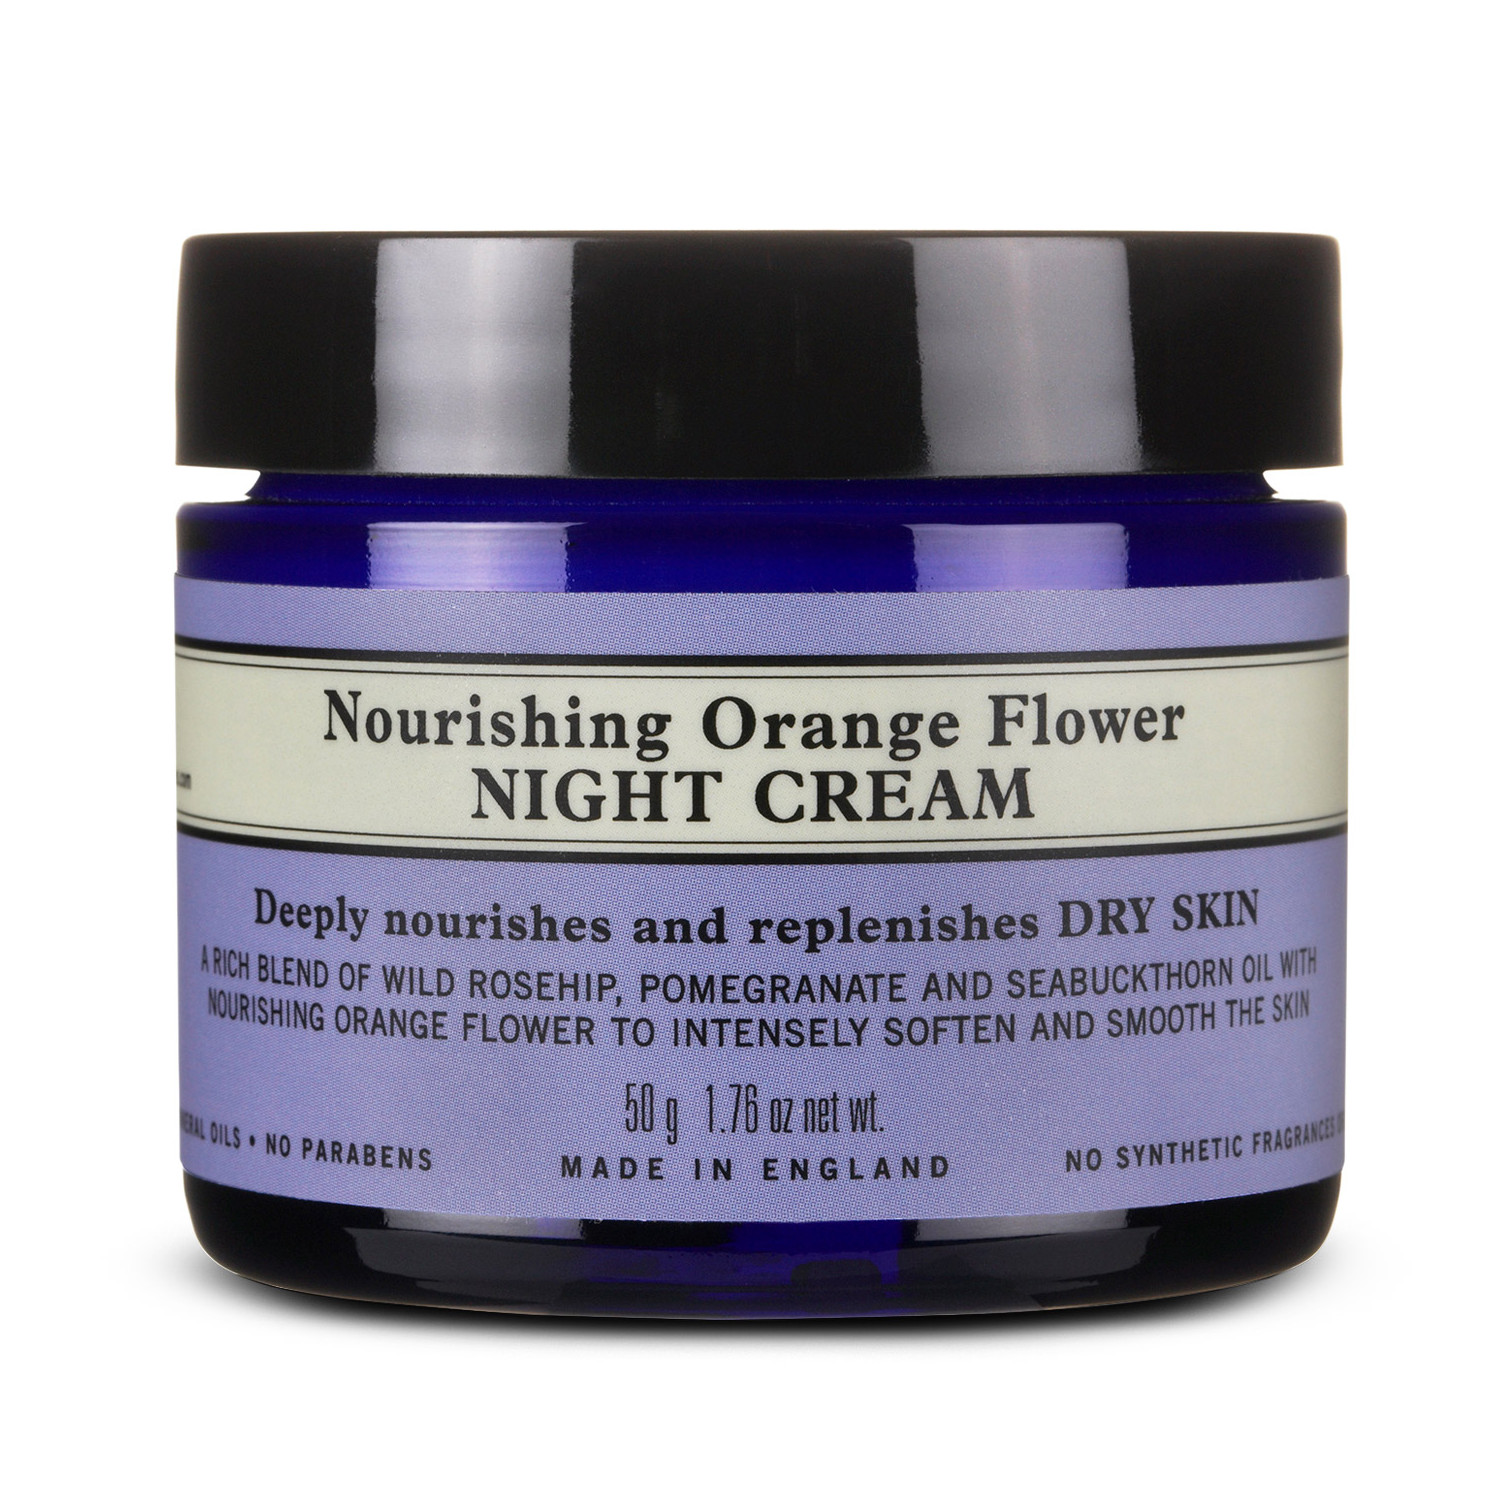 Neal's Yard Remedies Nourishing Orange Flower Night Cream 50g